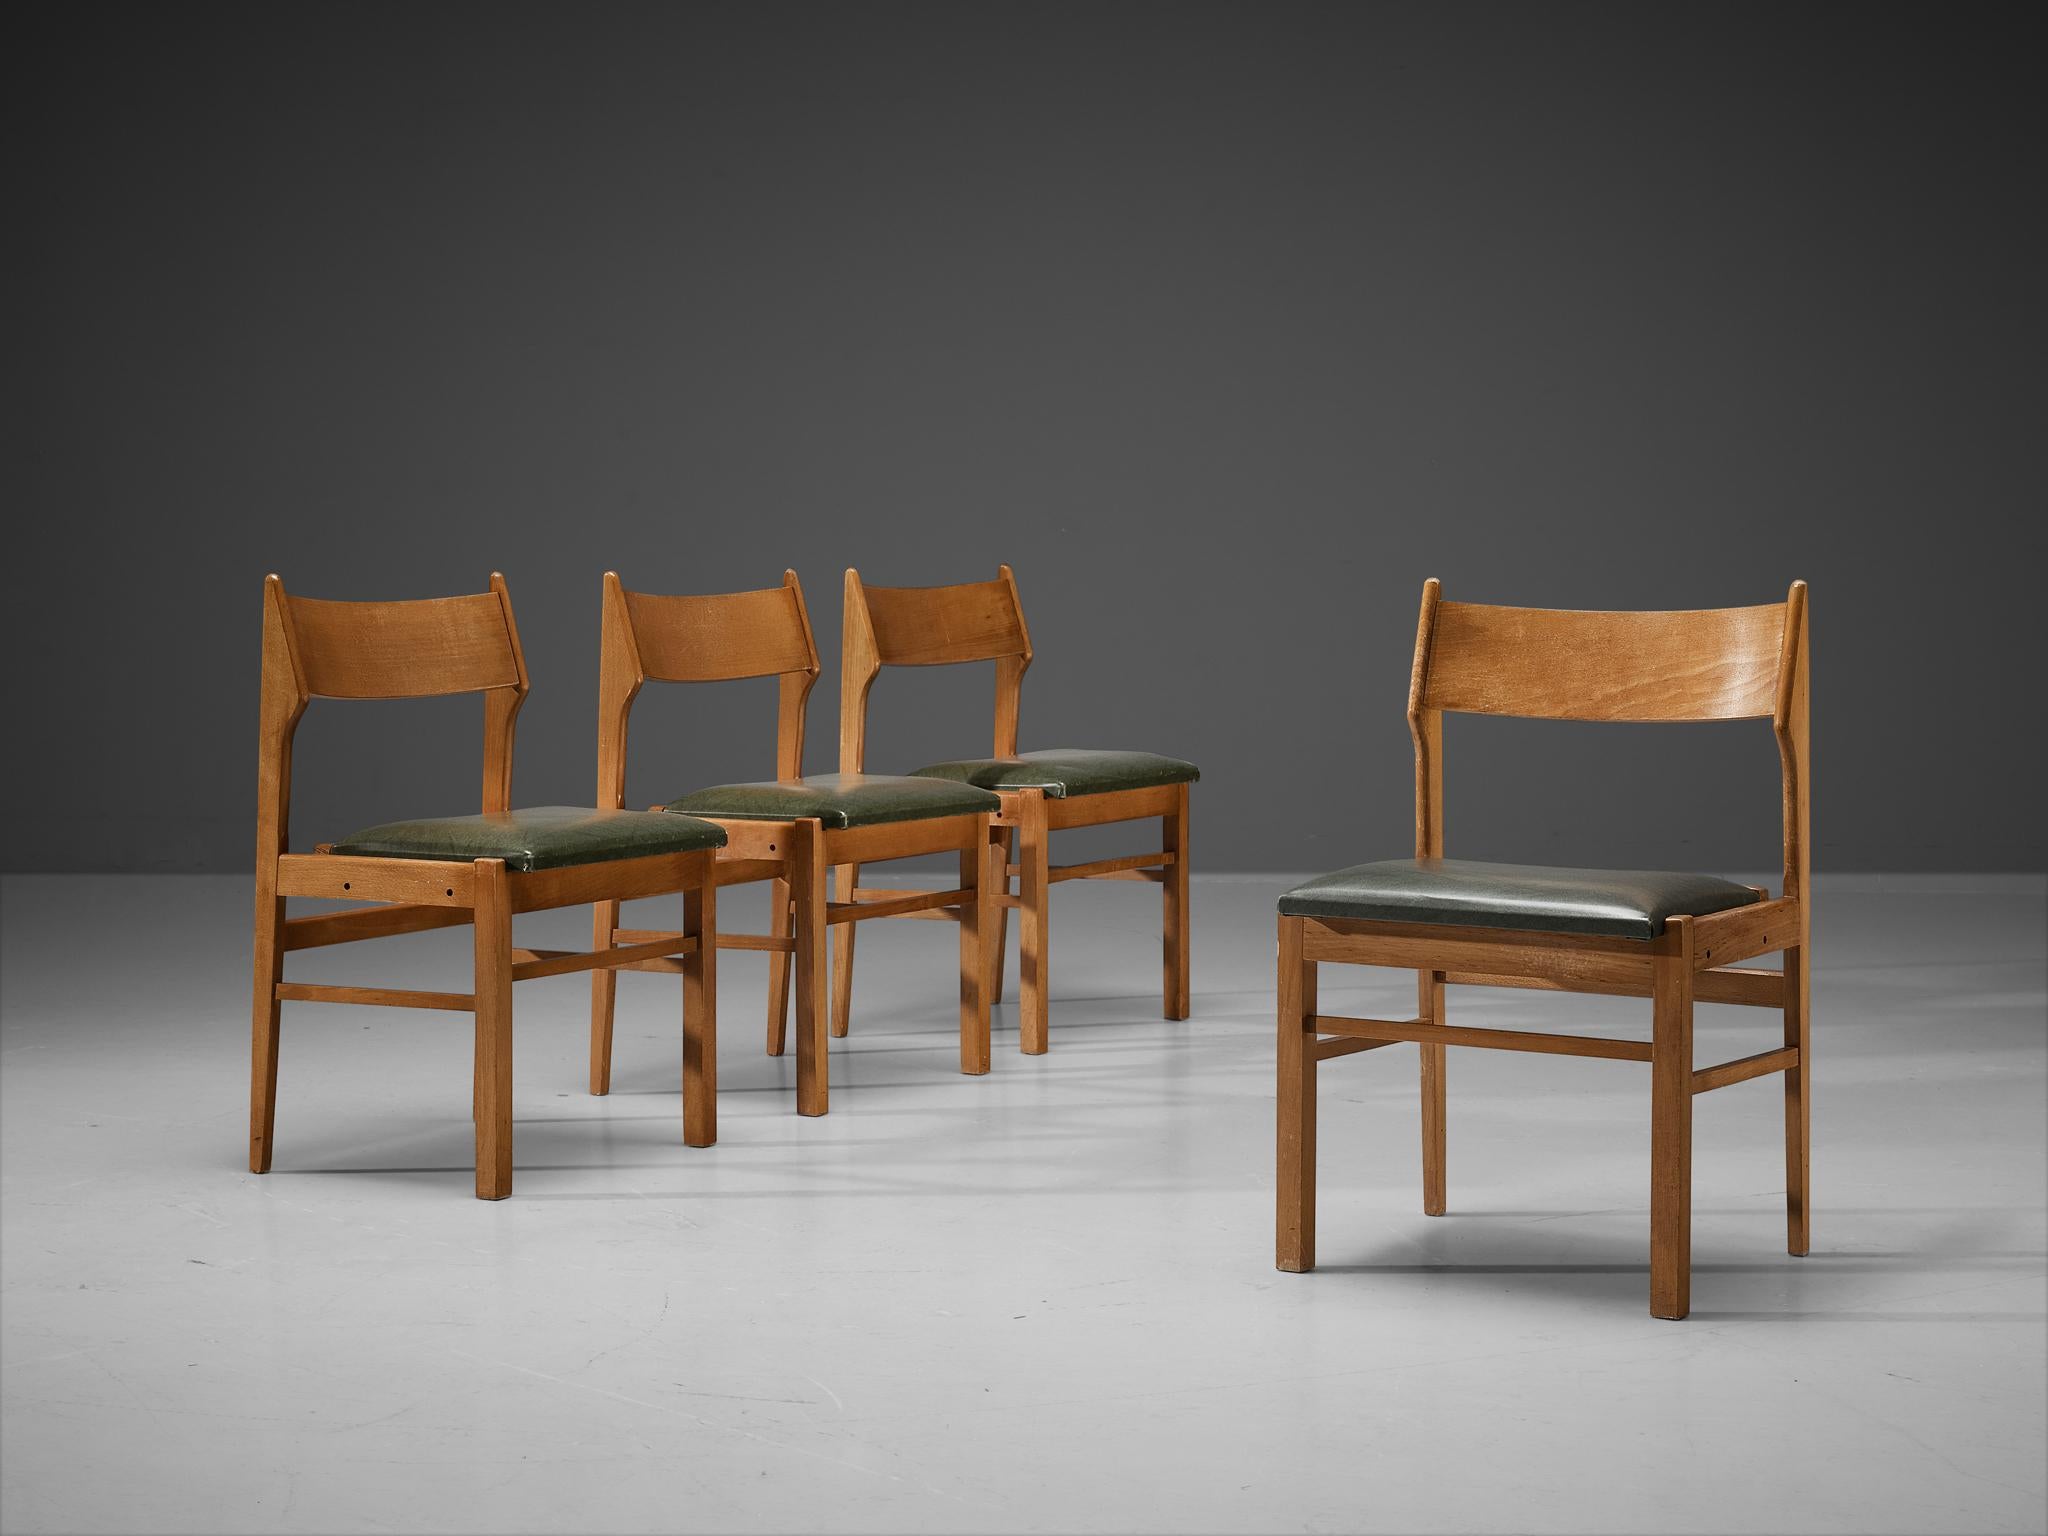 Esszimmerstühle, Holz, dunkelgrünes Kunstleder, Niederlande, 1960er Jahre. 

Bescheidenes Set aus vier niederländischen Esszimmerstühlen. Sein Design zeigt klare Linien und eine luftige Rückenlehne. Die dunkelgrünen Kunstledersitze bilden einen